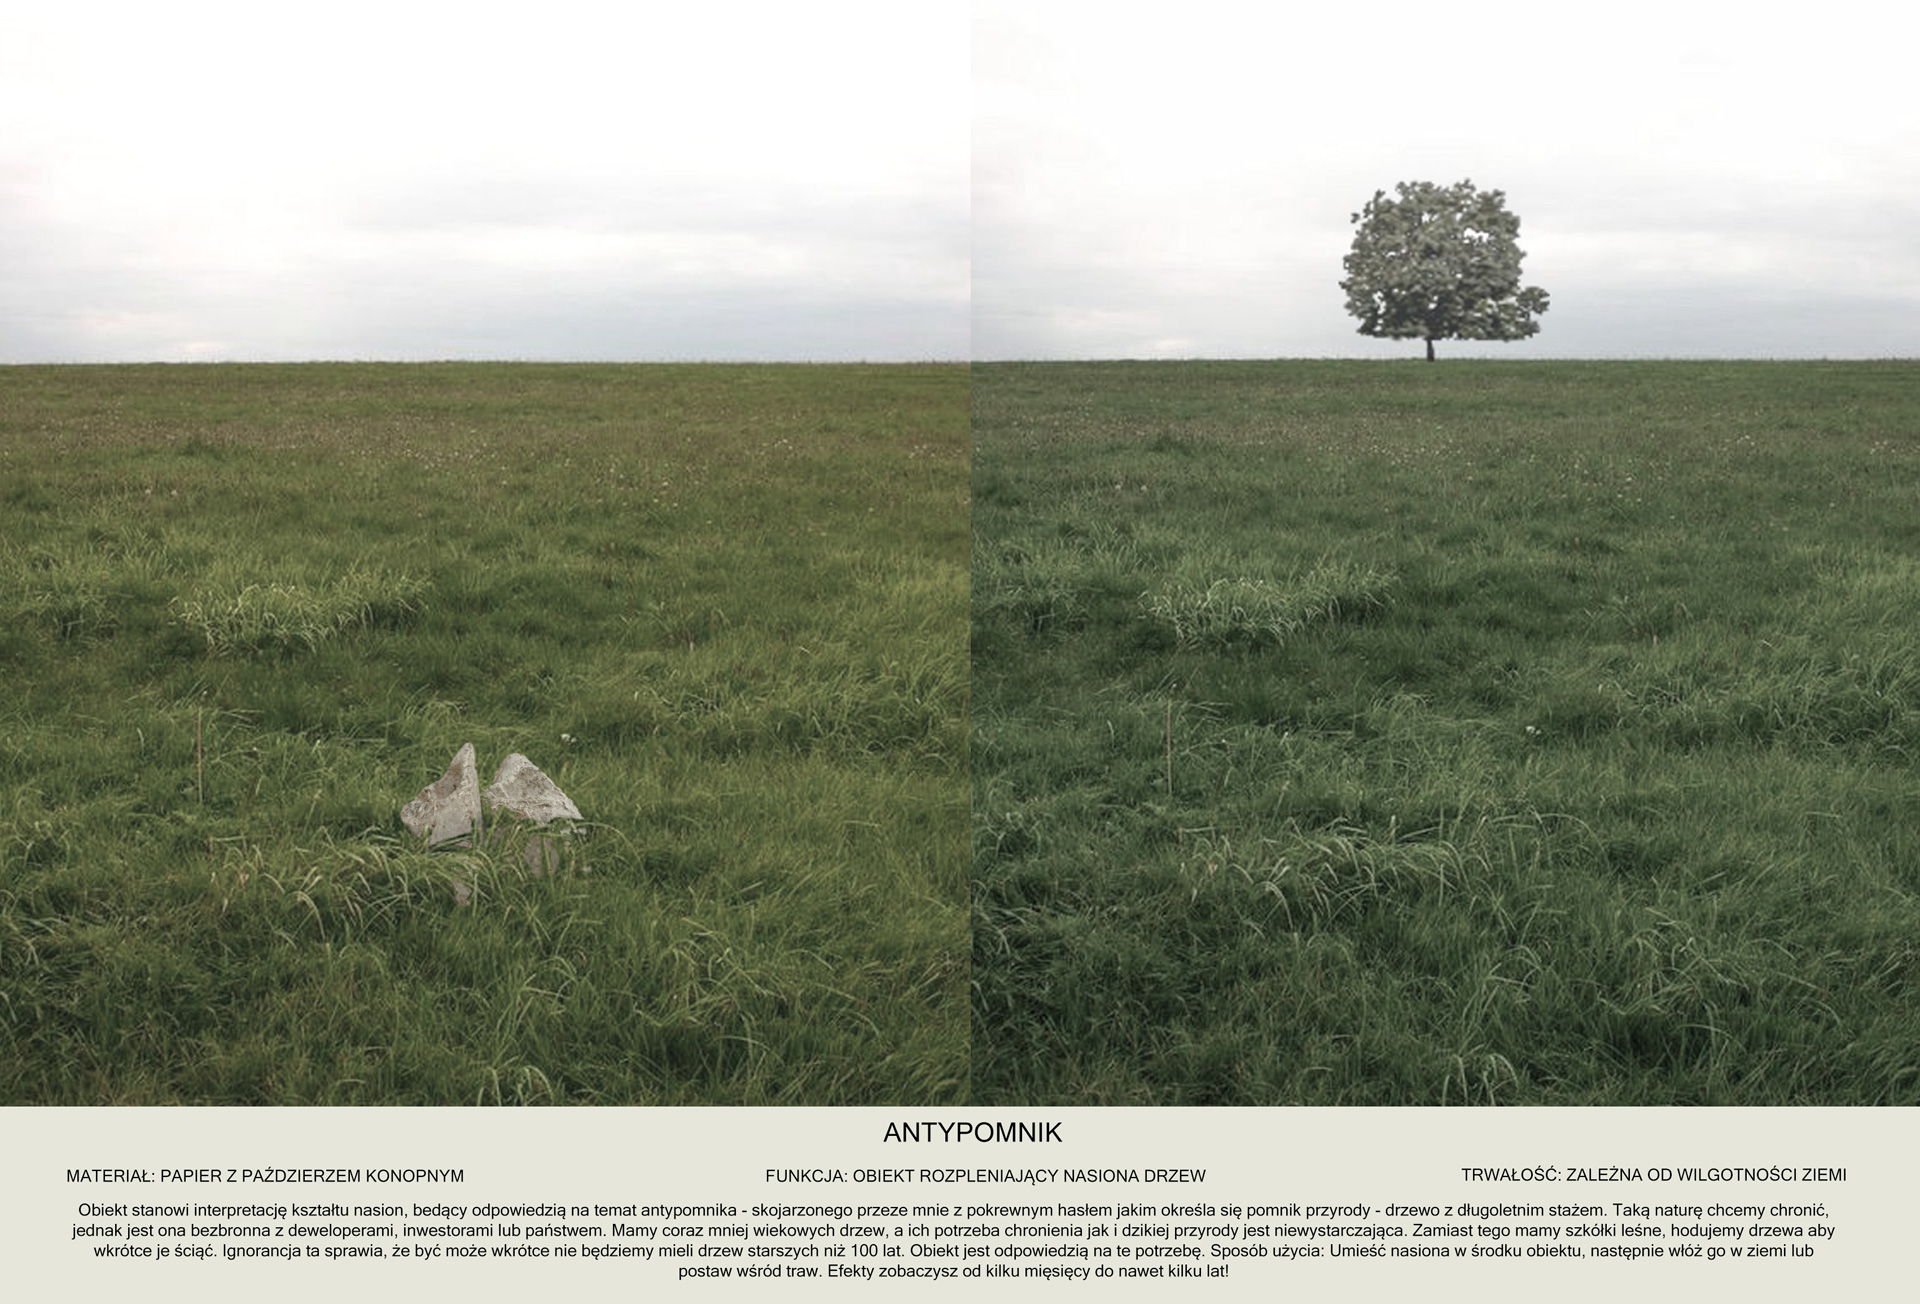 Dwa zestawione zdjęcia zielonej łąki z drzewem na linii horyzontu po prawej stronie. W lewym dolnym rogu znajduje się leżąca w trawie bezkształtna forma z masy papierowej przypominająca kamień